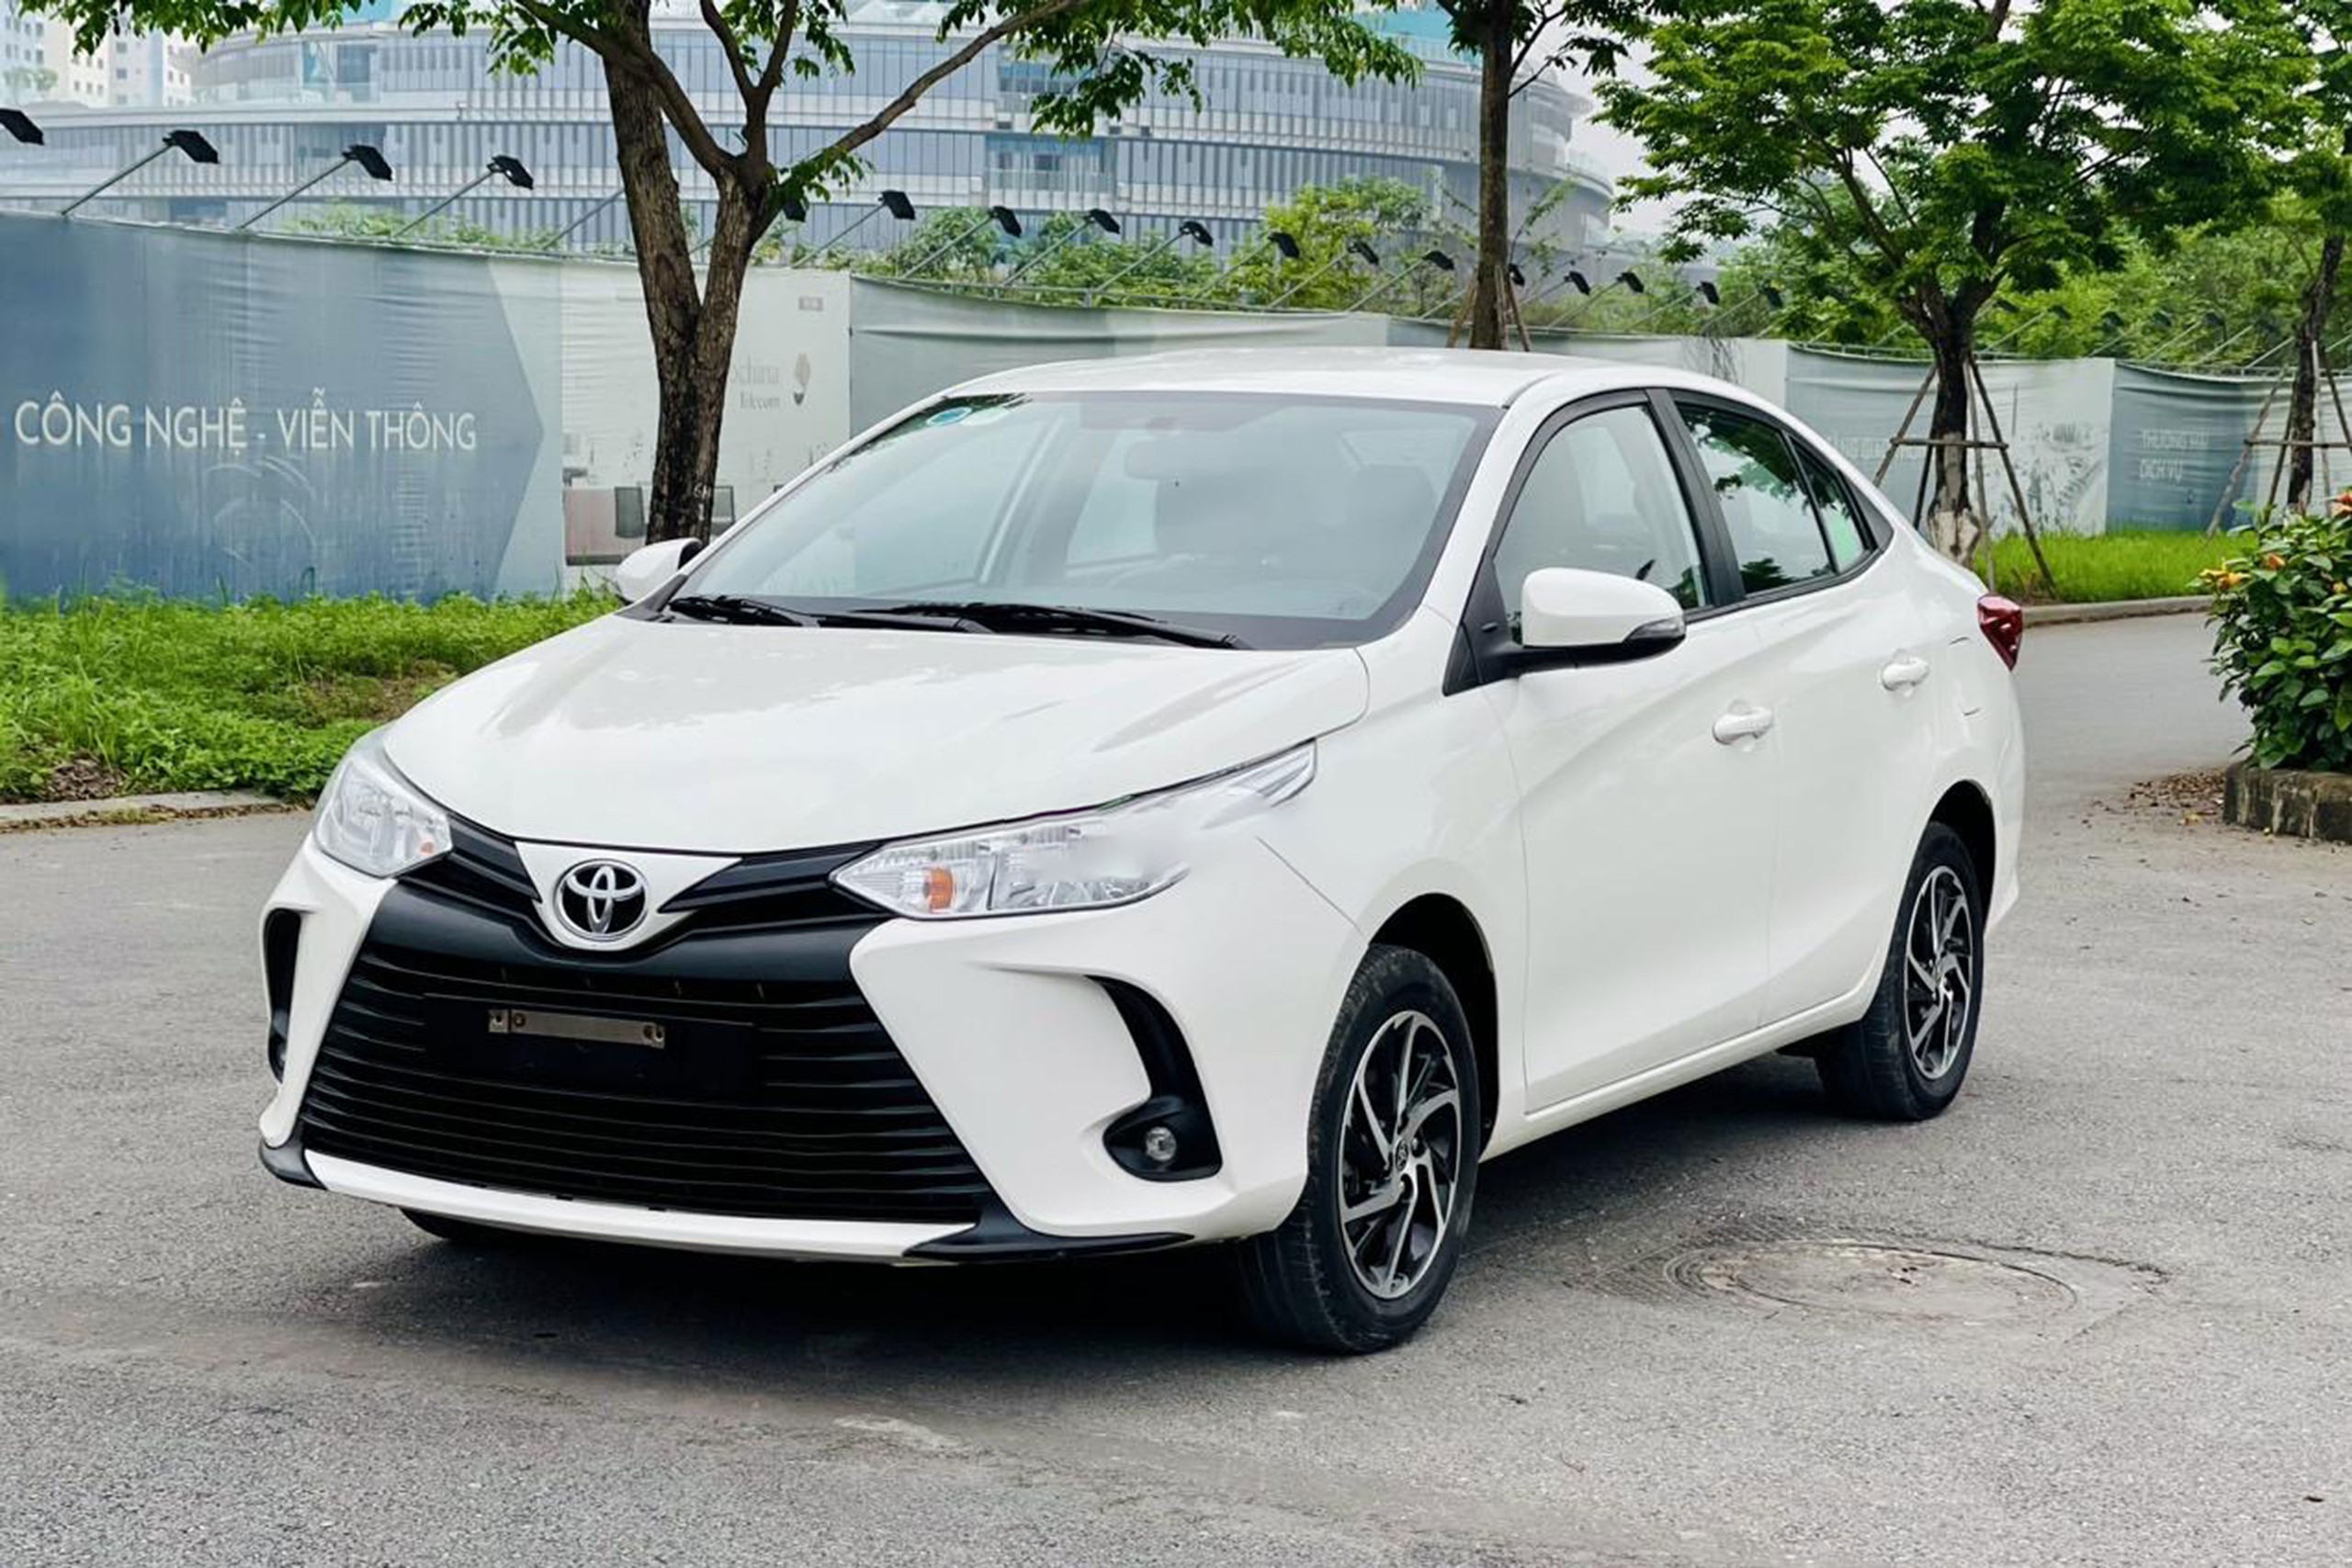 Bất ngờ giá Toyota Vios bản dịch vụ sau 3 năm lăn bánh tại Việt Nam- Ảnh 1.